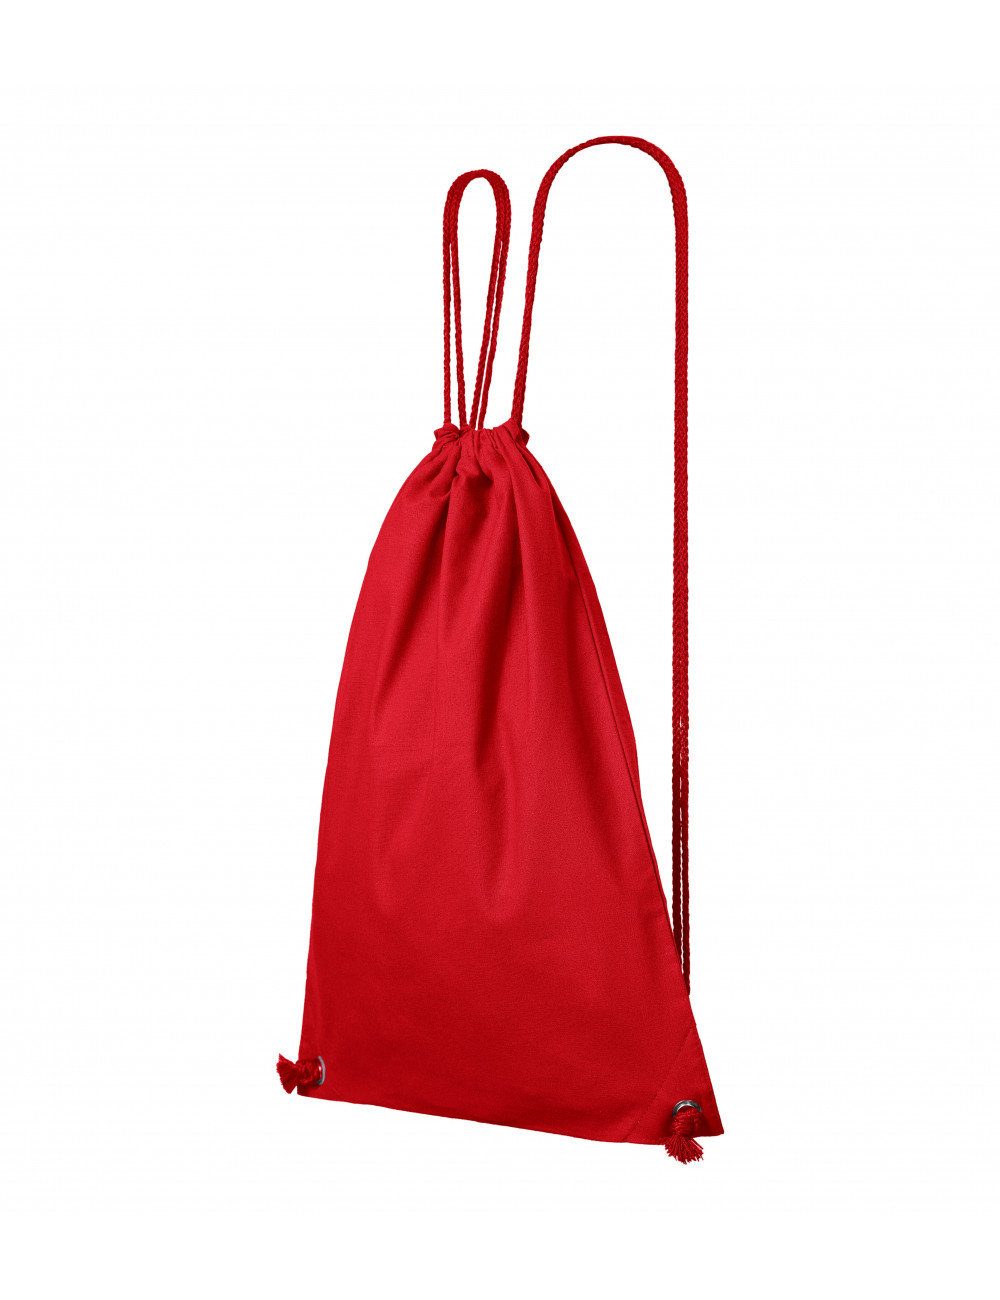 Easygo 922 unisex backpack red Adler Malfini